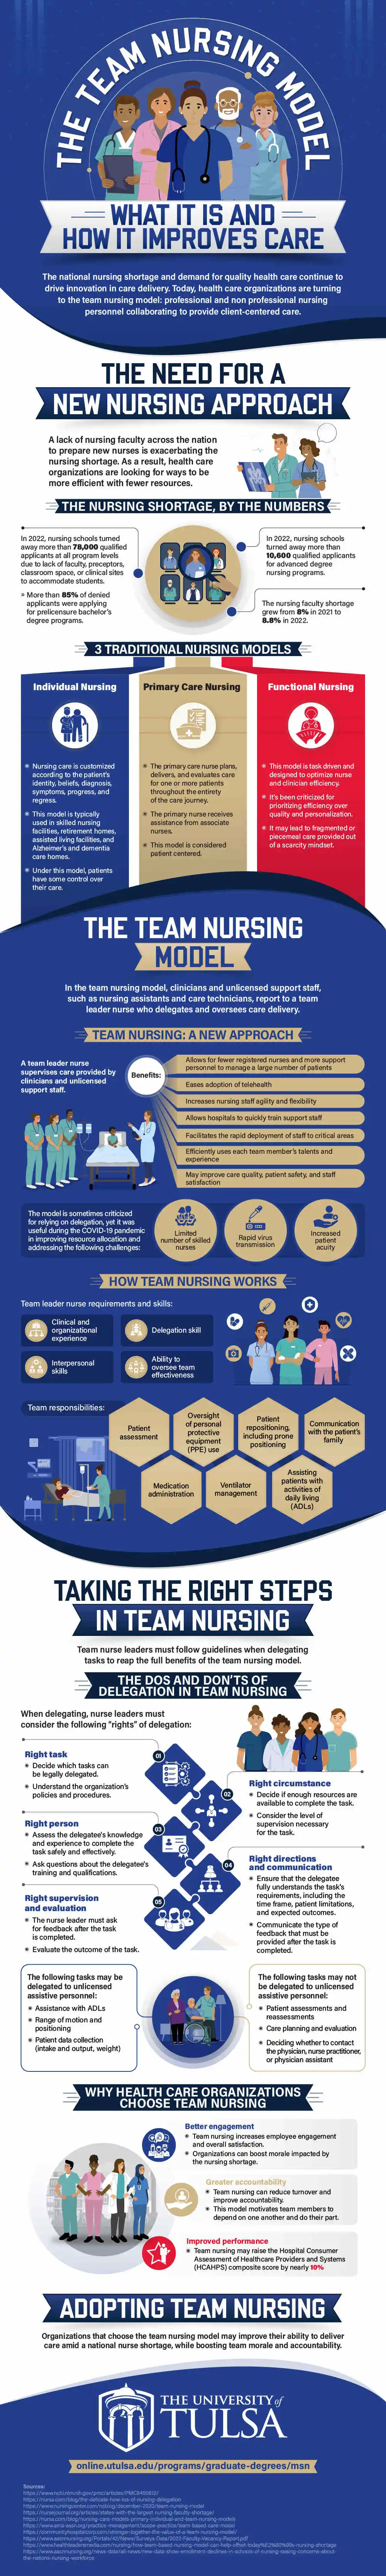 Infographic describing the team nursing model. 